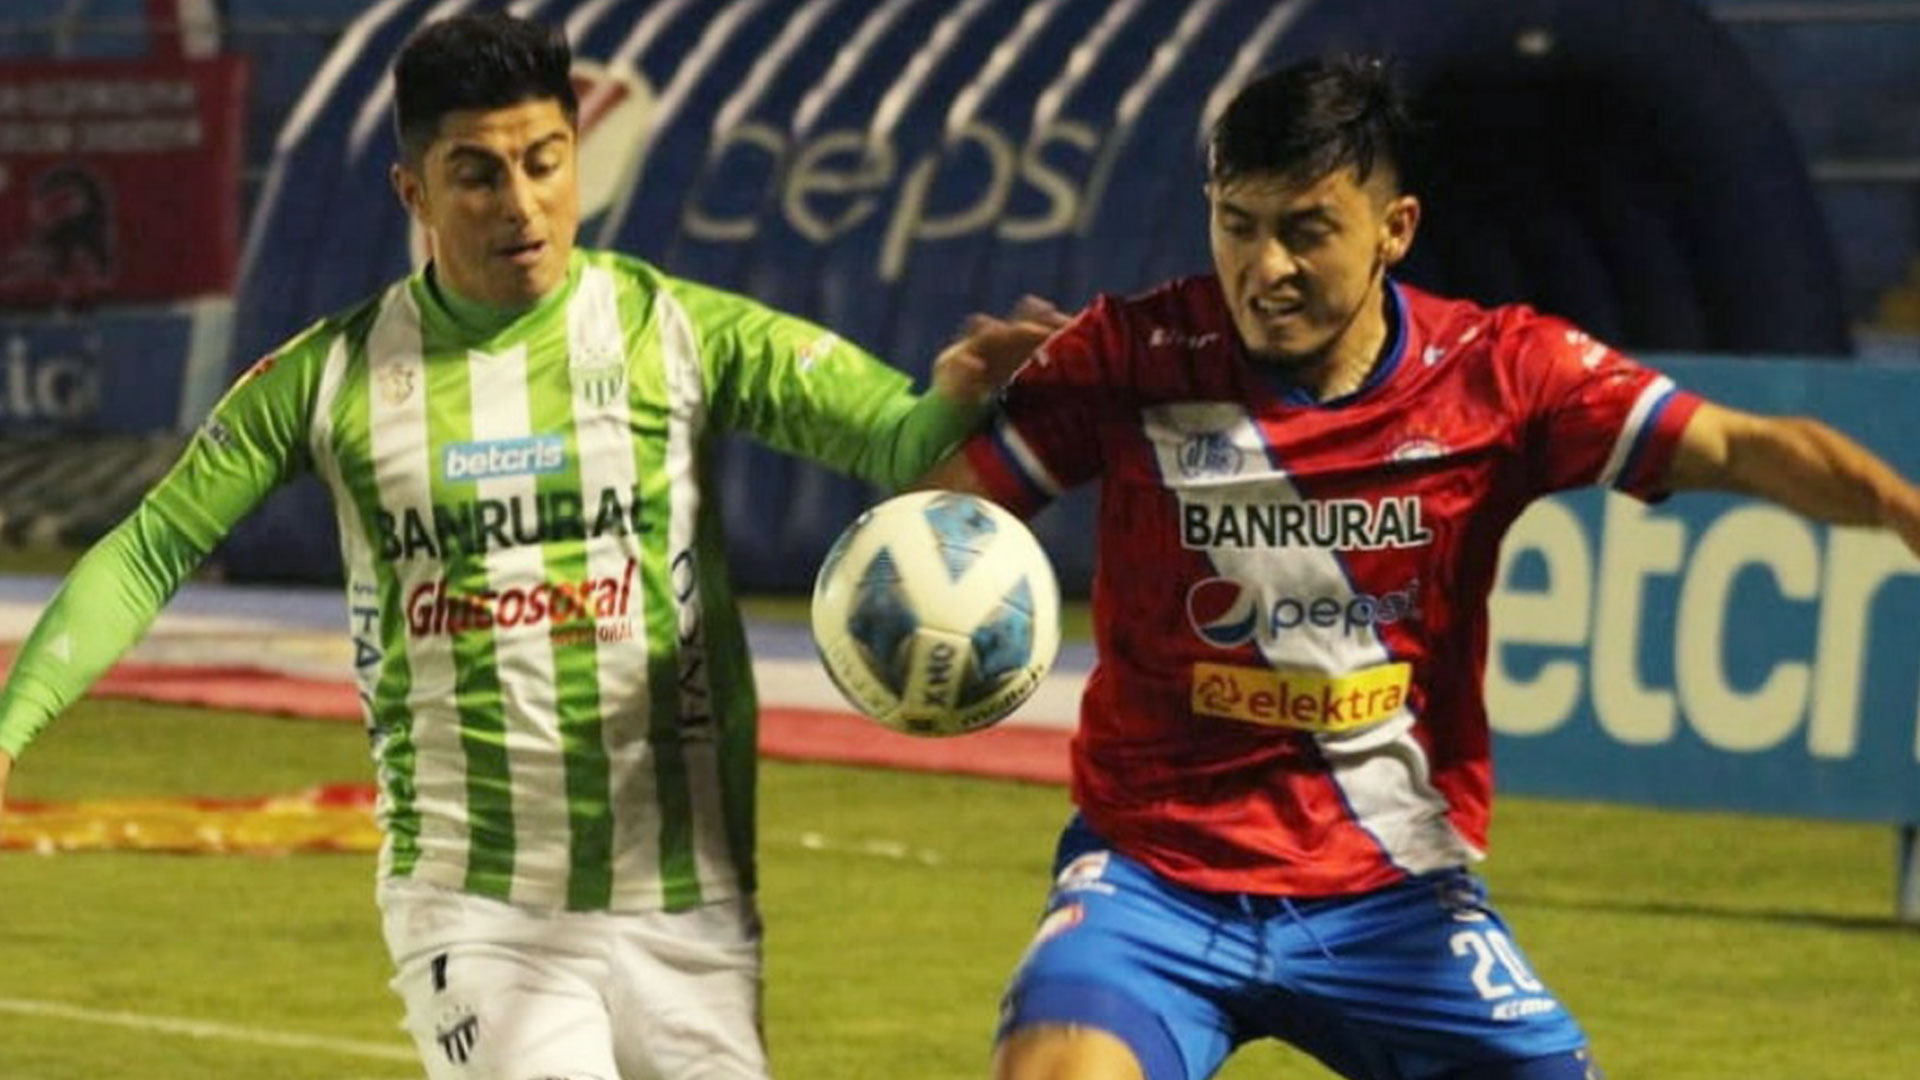 El jugador de Antigua Frank de León (derecha) disputa el balón junto con el jugador de Xelajú, Harim Quezada. (Foto Prensa Libre: Xelajú MC Facebook)